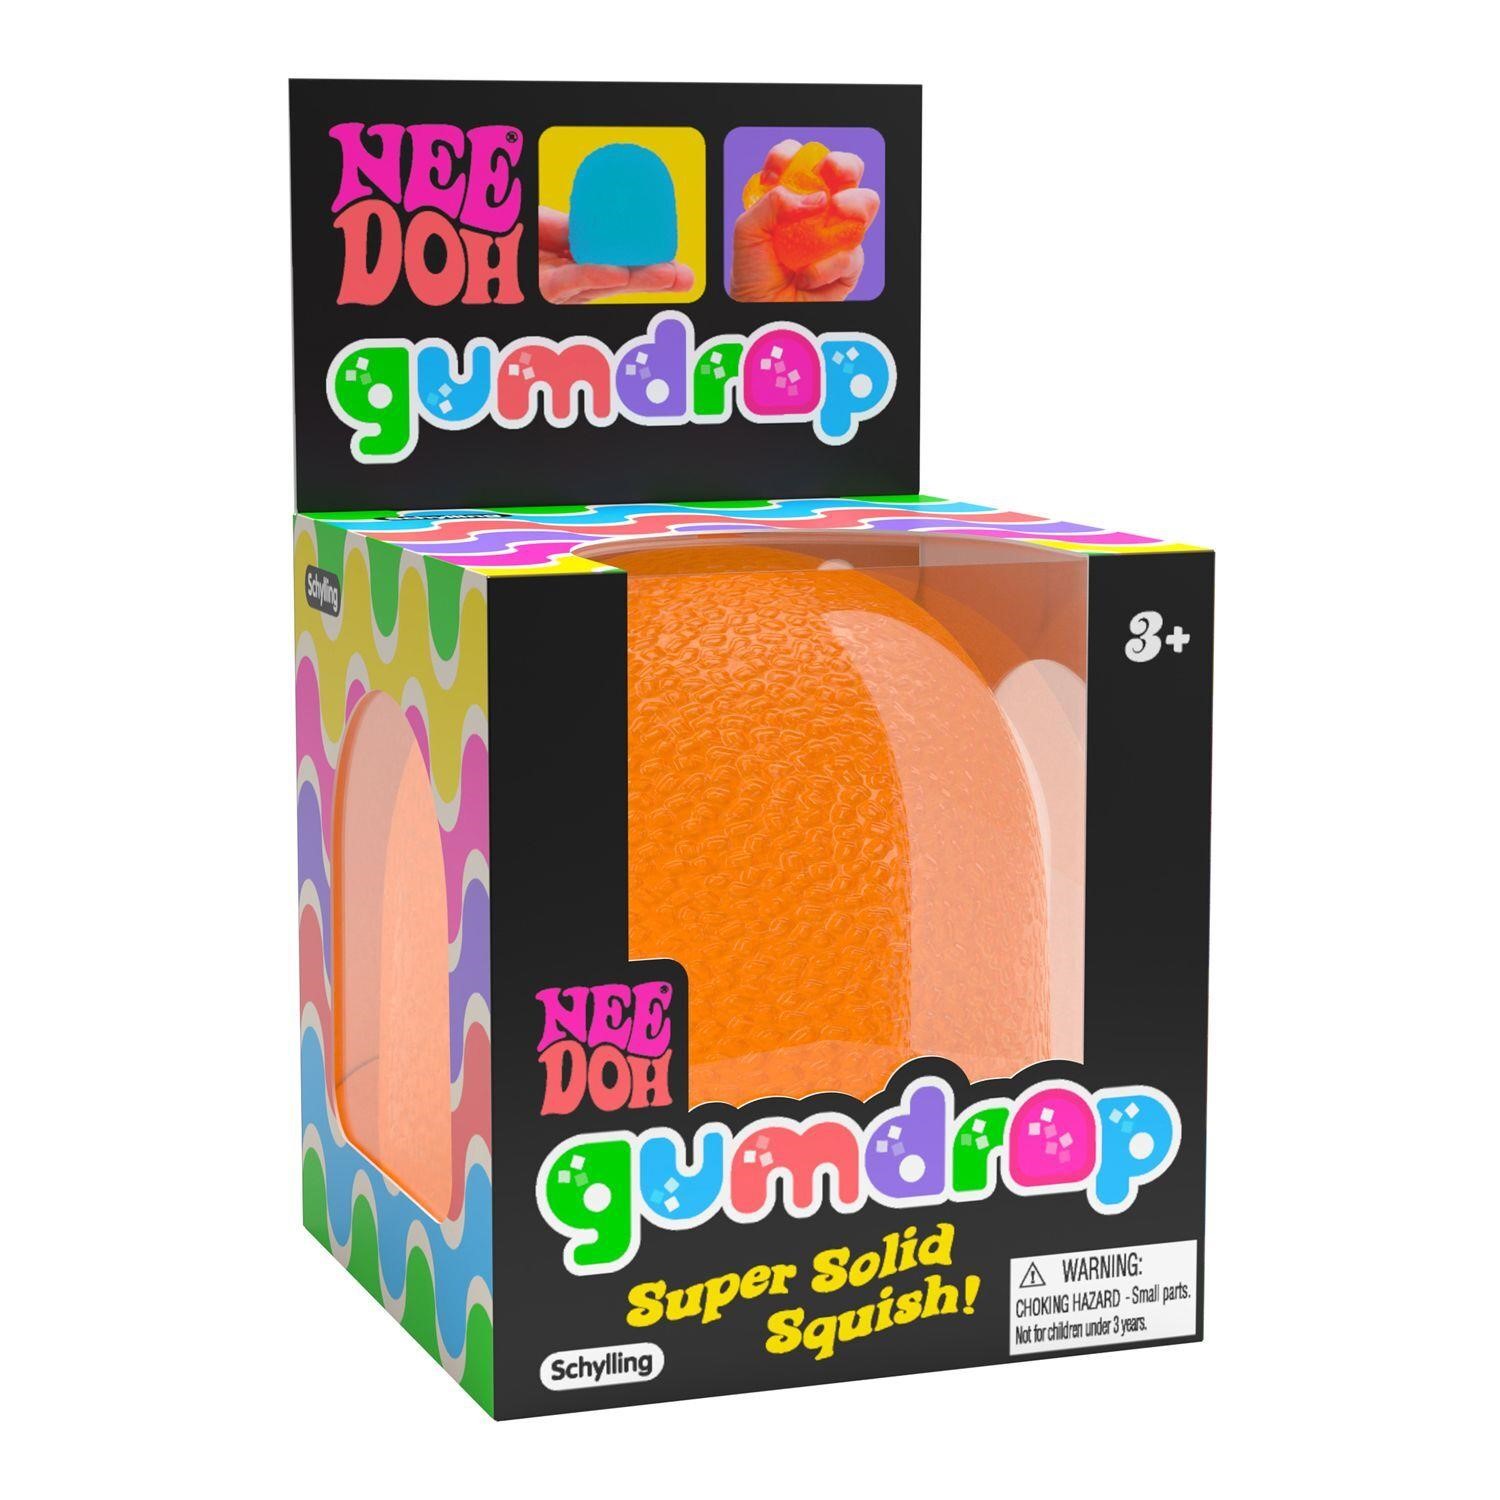 $6  NeeDoh Gumdrop Super Solid Squish